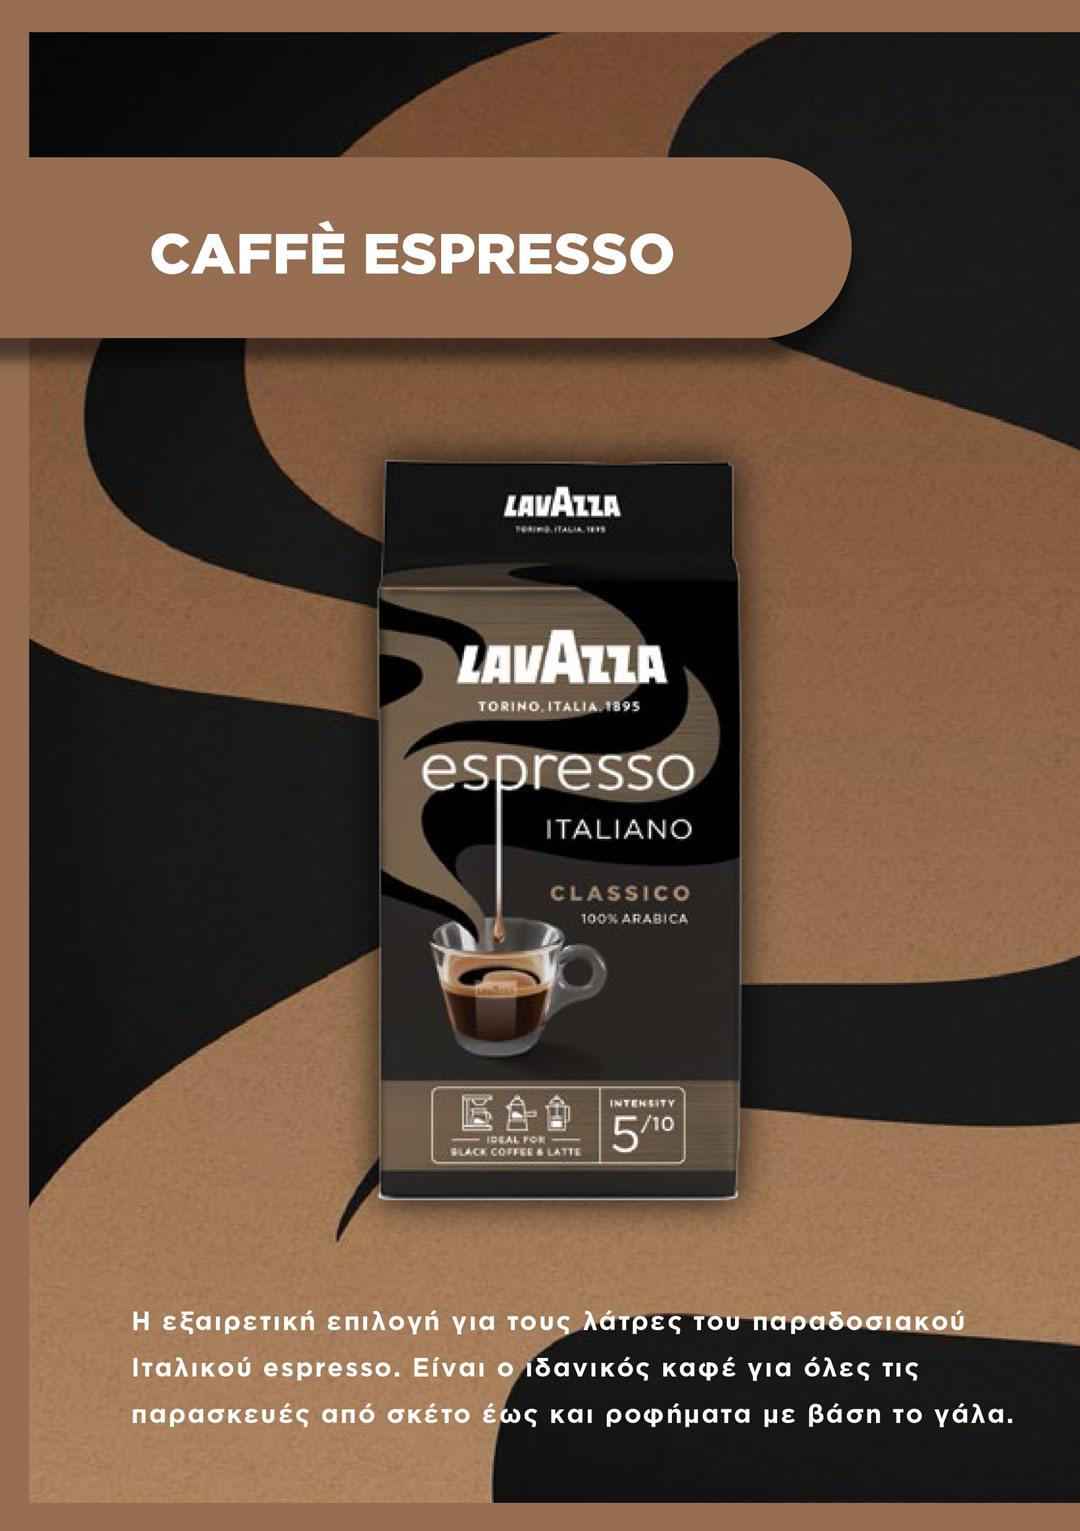 Caffè Espresso Lavazza Espresso Italiano 250g macinato